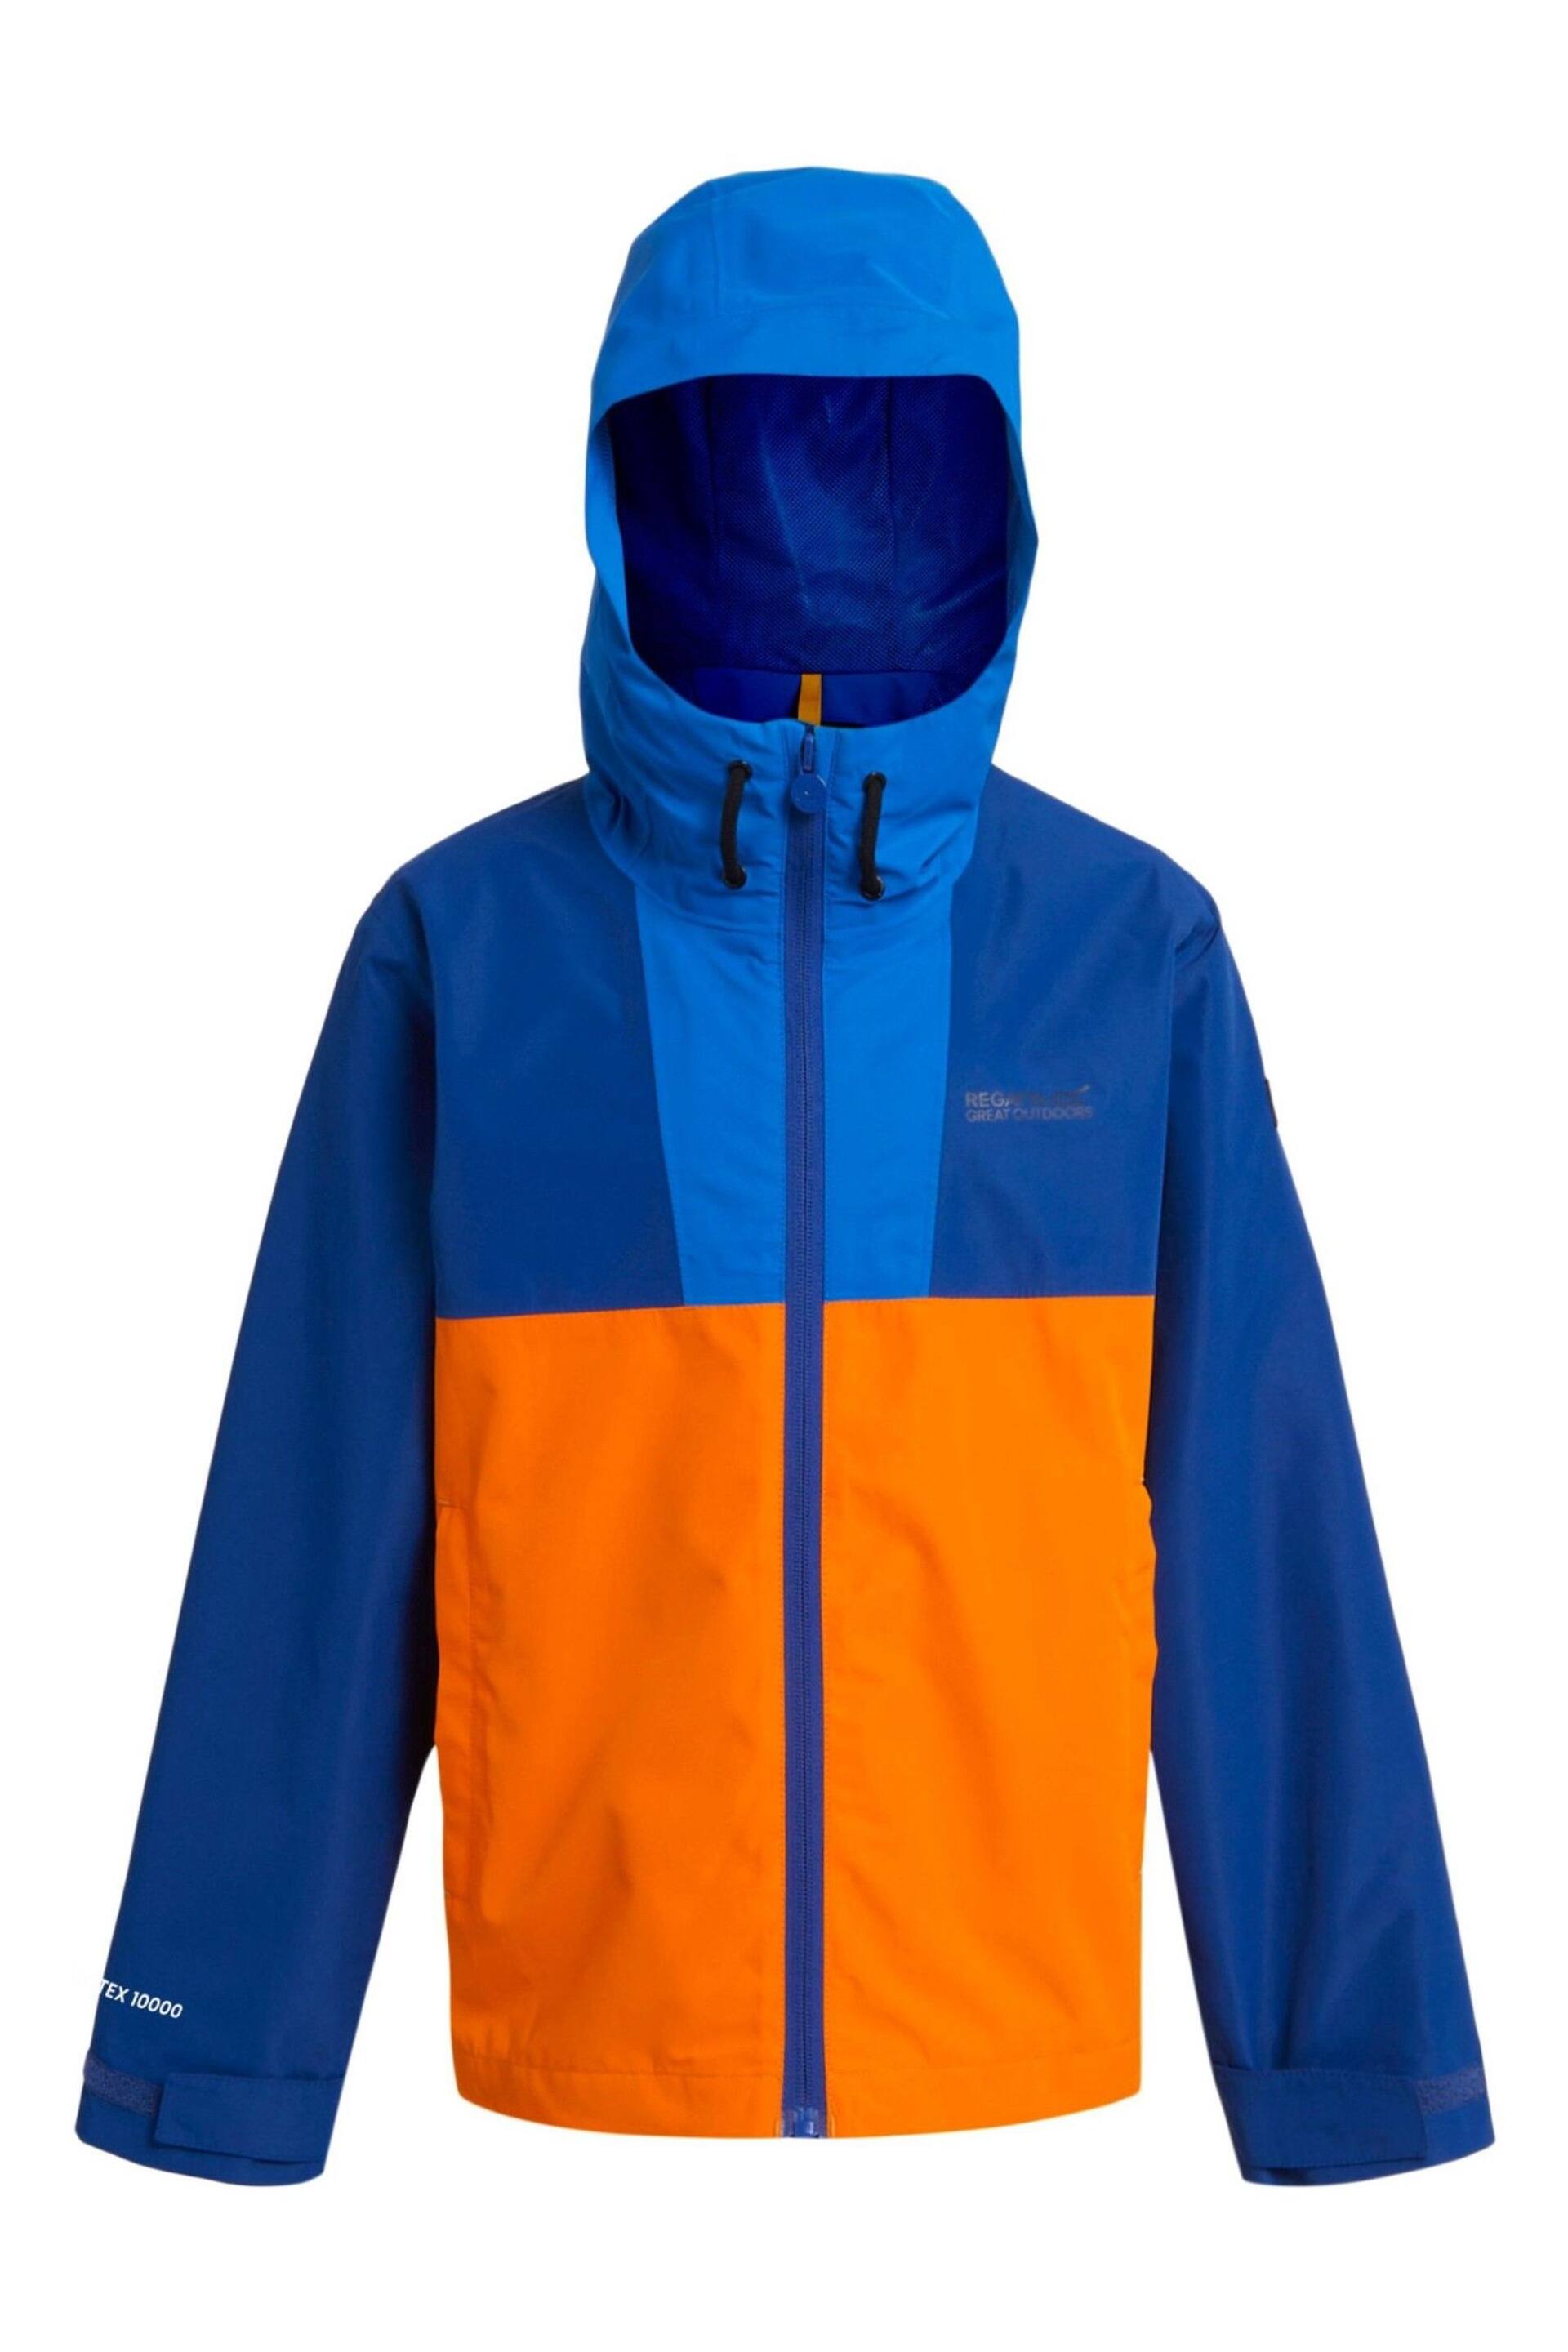 Regatta Blue Orange Hanleigh Waterproof Hiking Jacket - Image 9 of 11